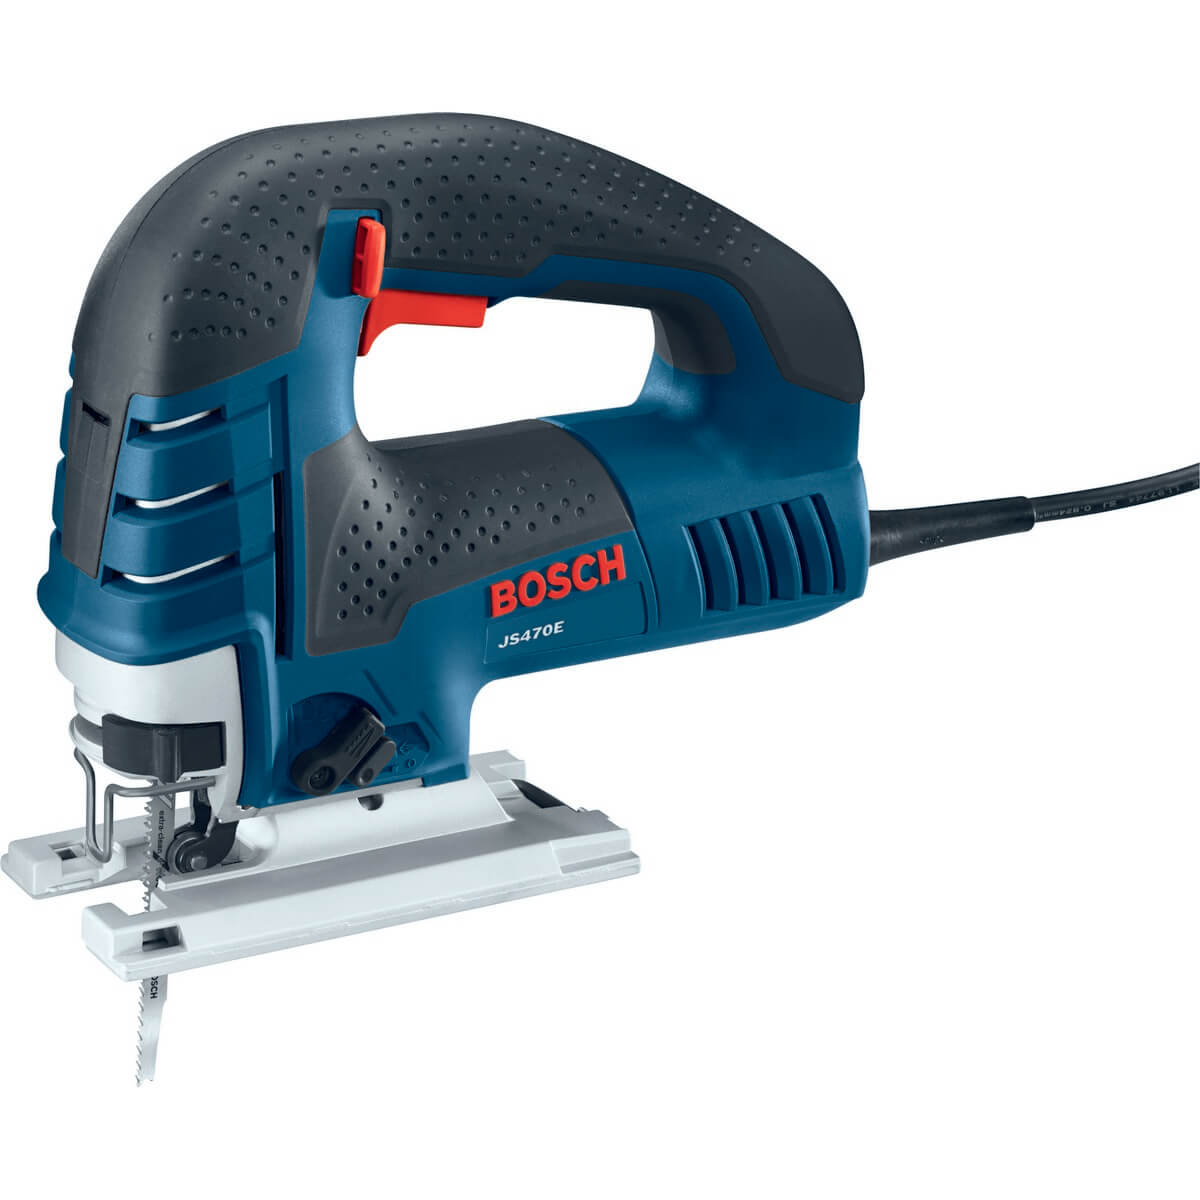 BOSCH, Bosch JS470E - Top-Handle Jigsaw